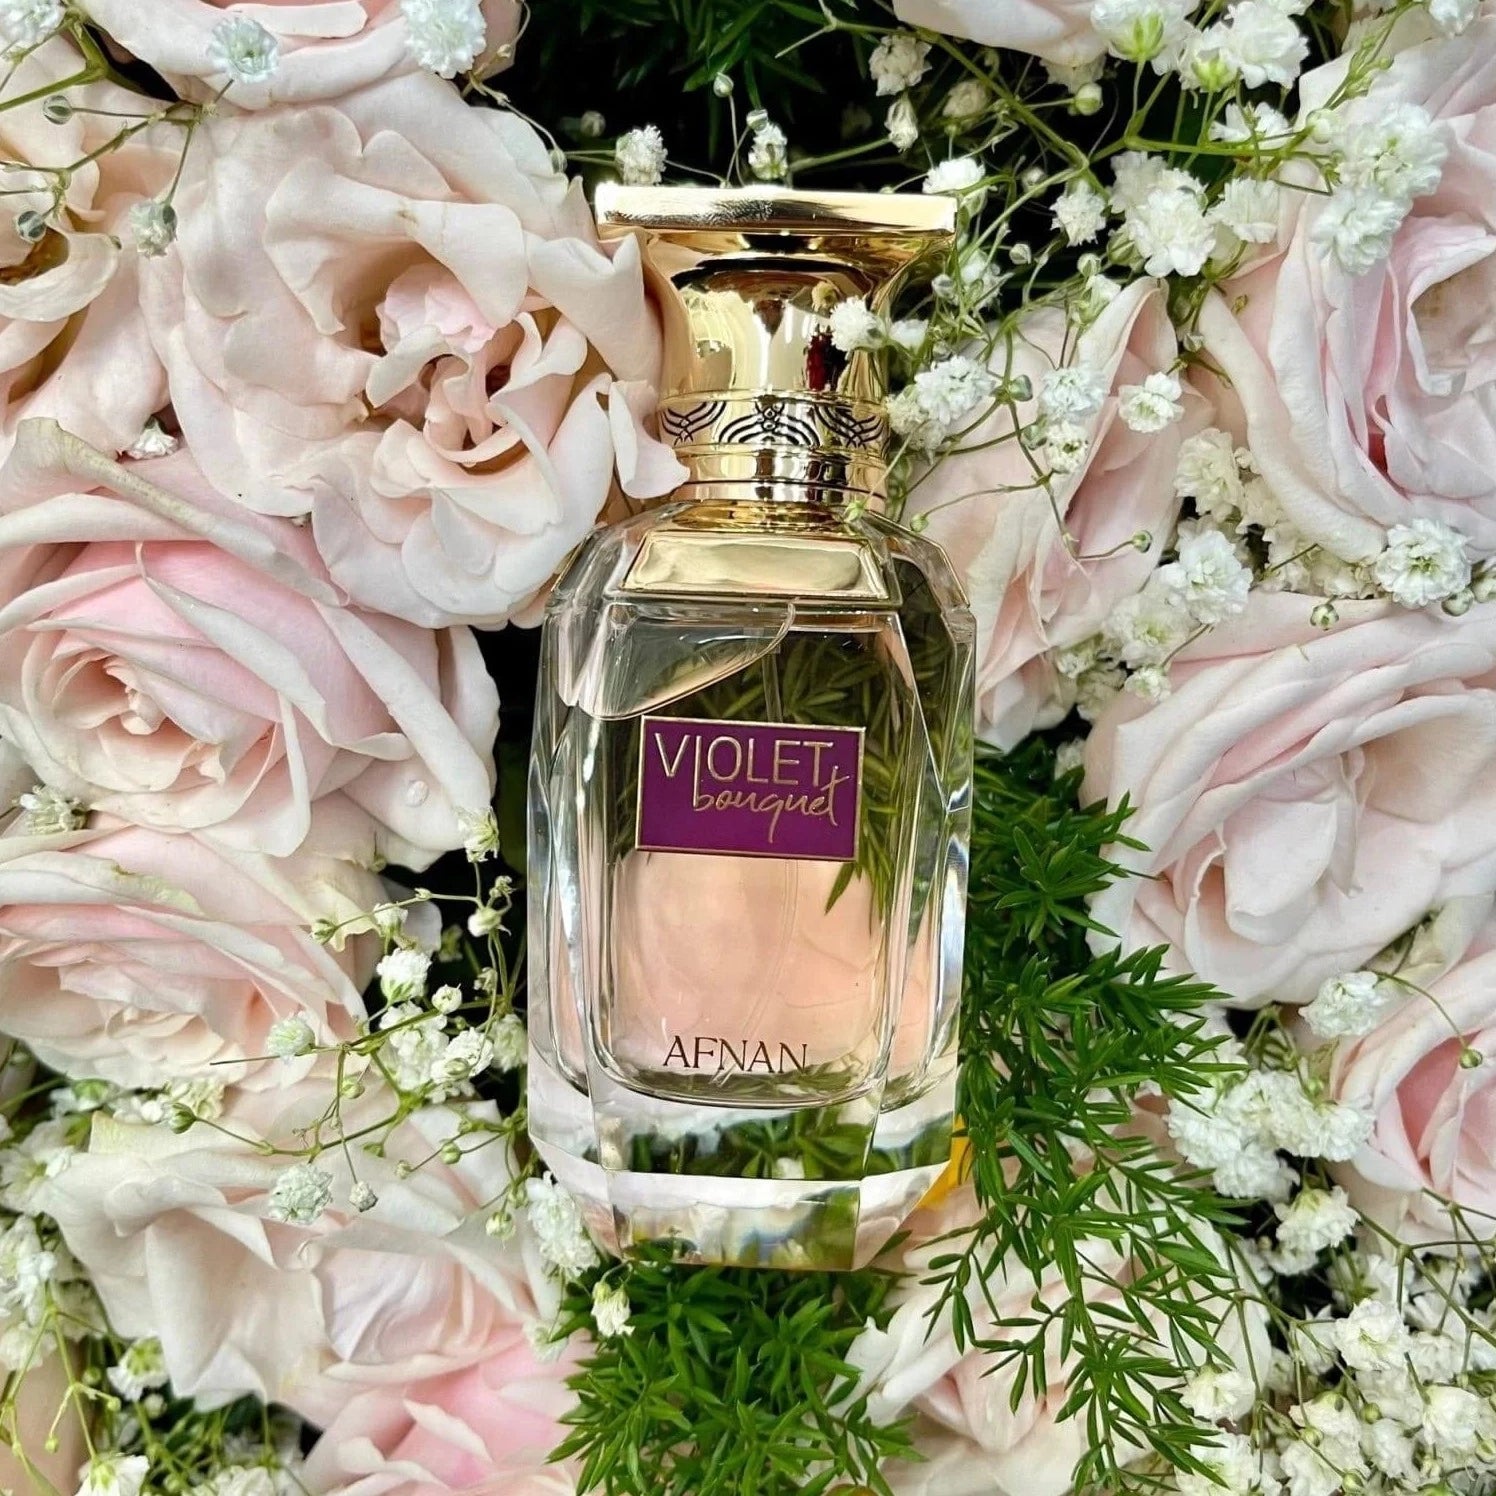 Afnan Violet Bouquet EDP | My Perfume Shop Australia